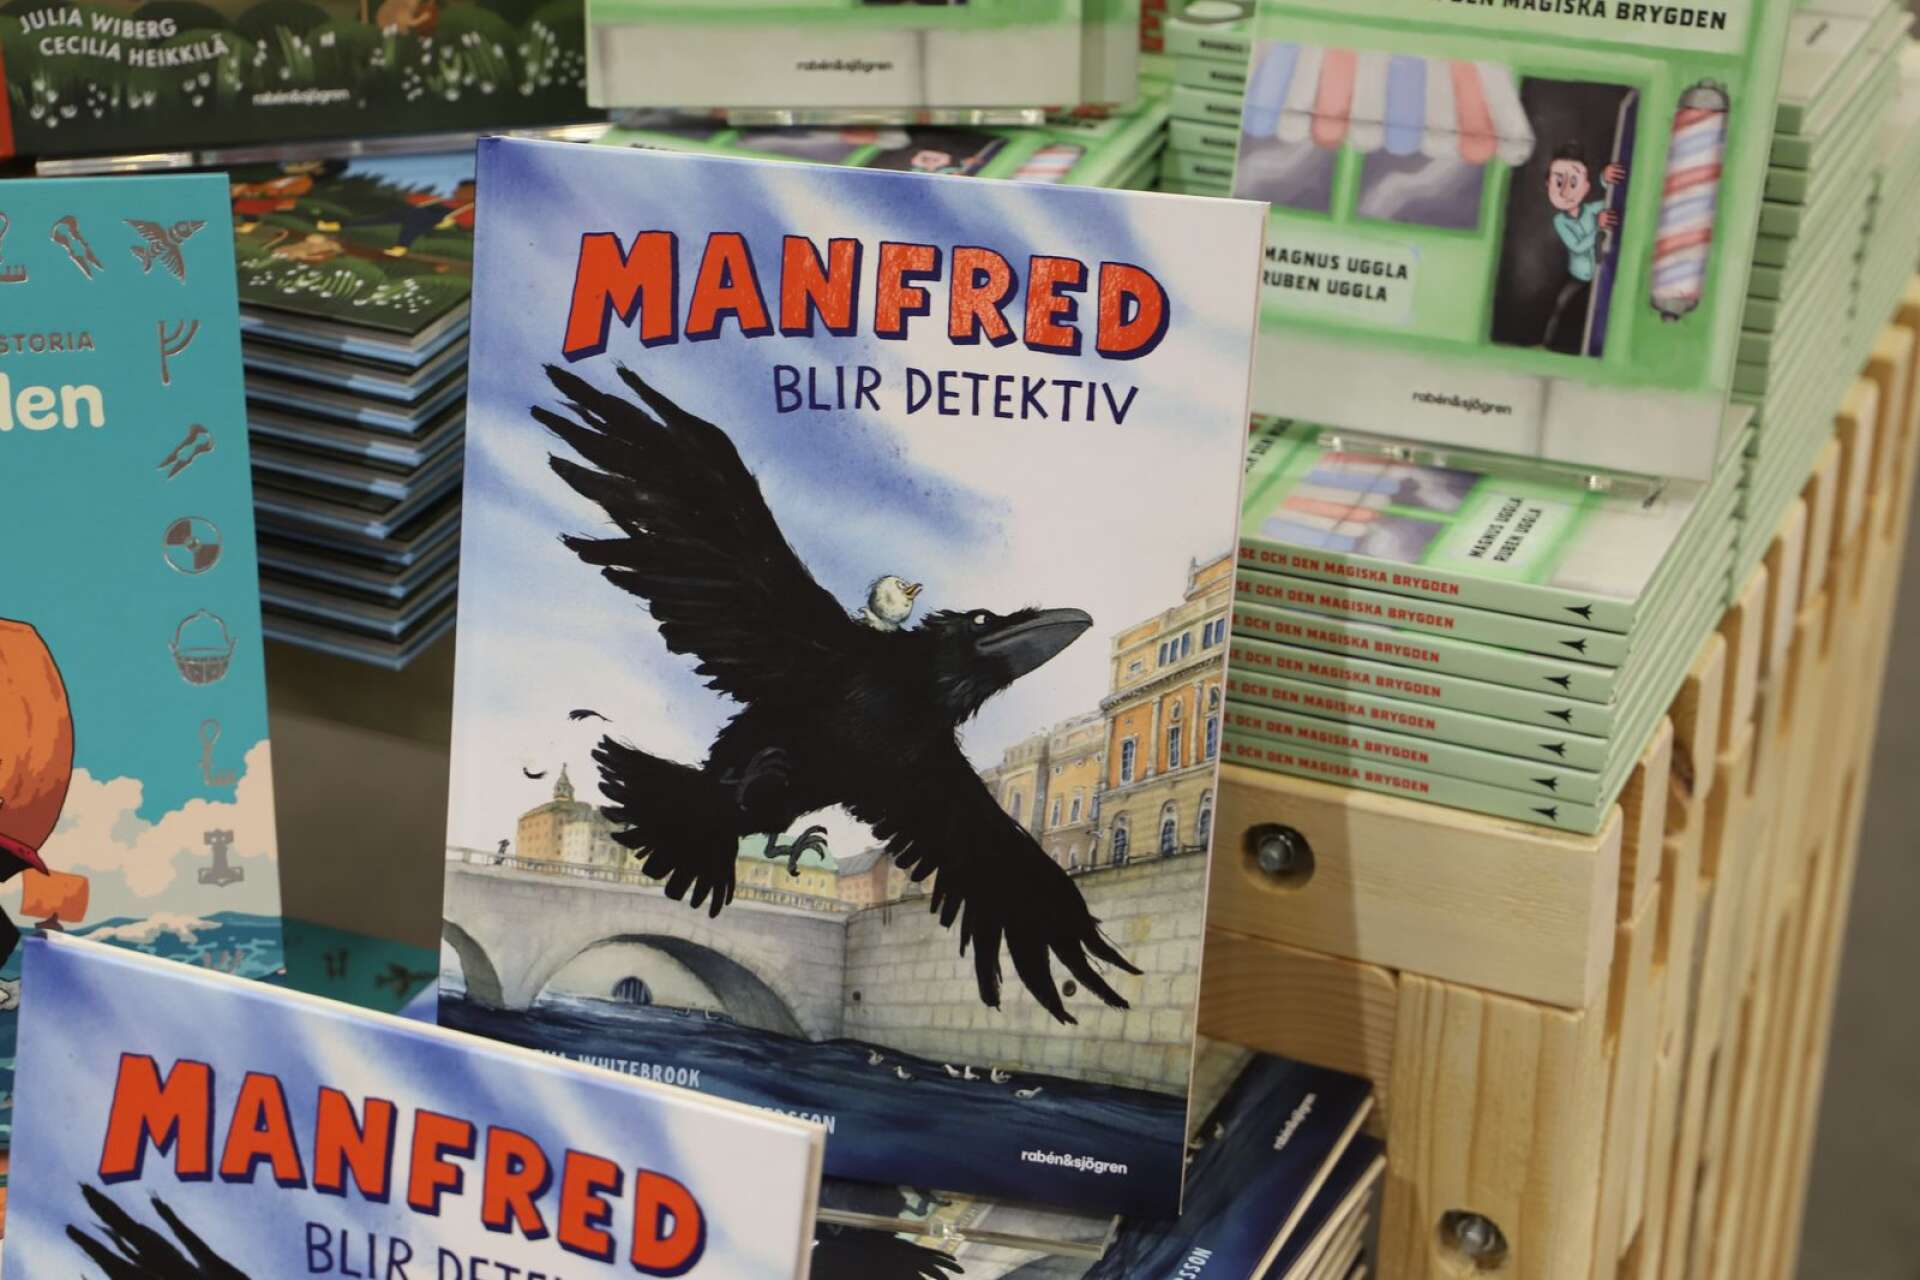 Manfred blir detektiv handlar om en vresig korp i Stockholm.